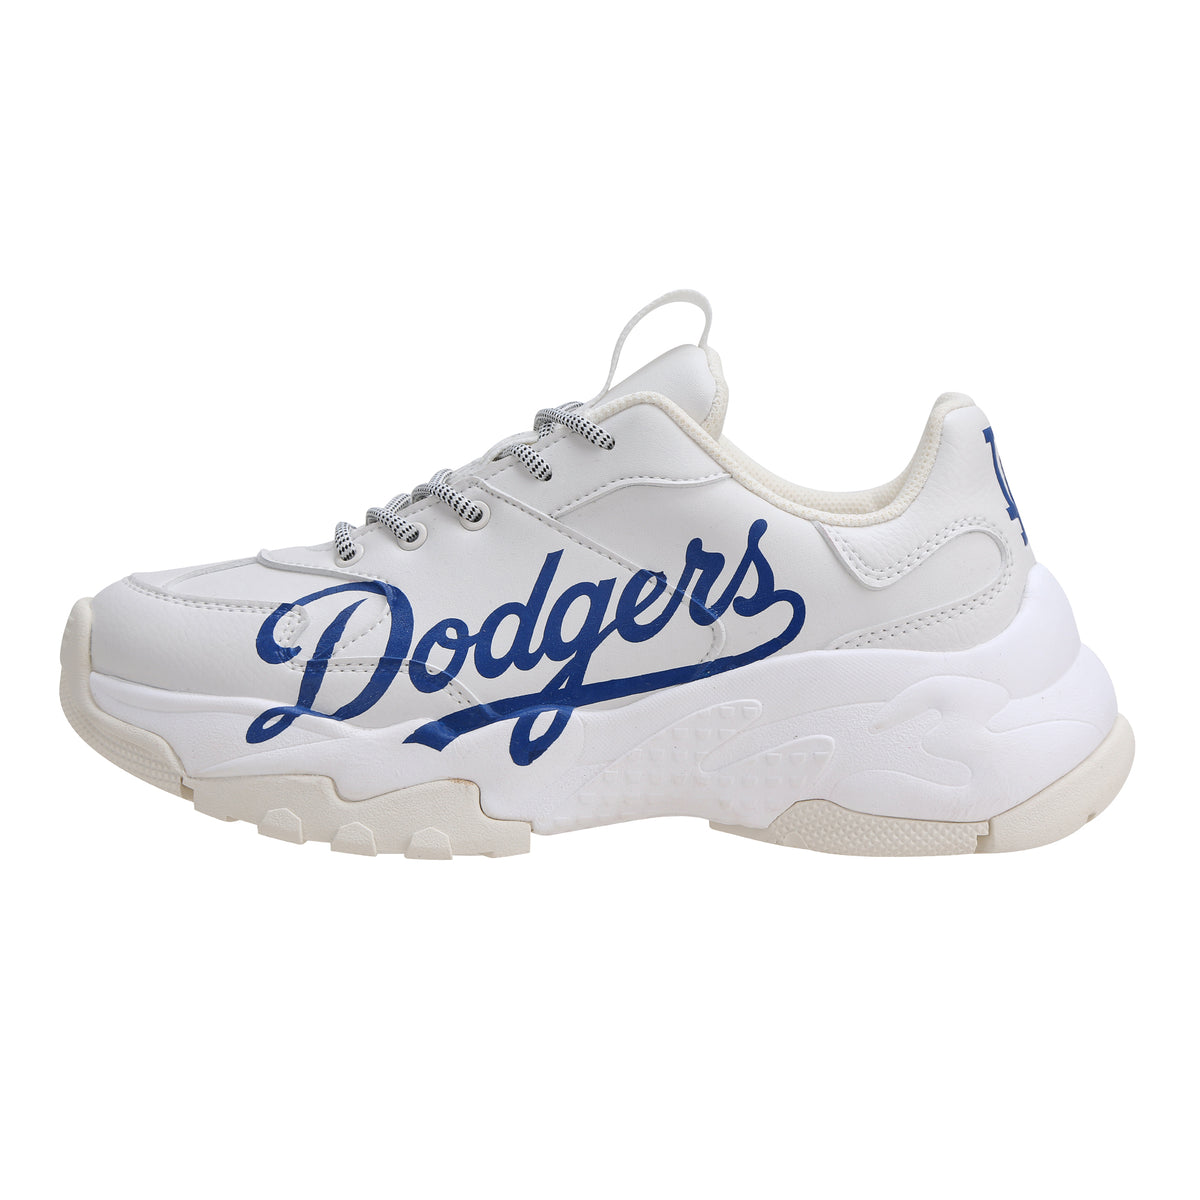 dodger tennis shoes